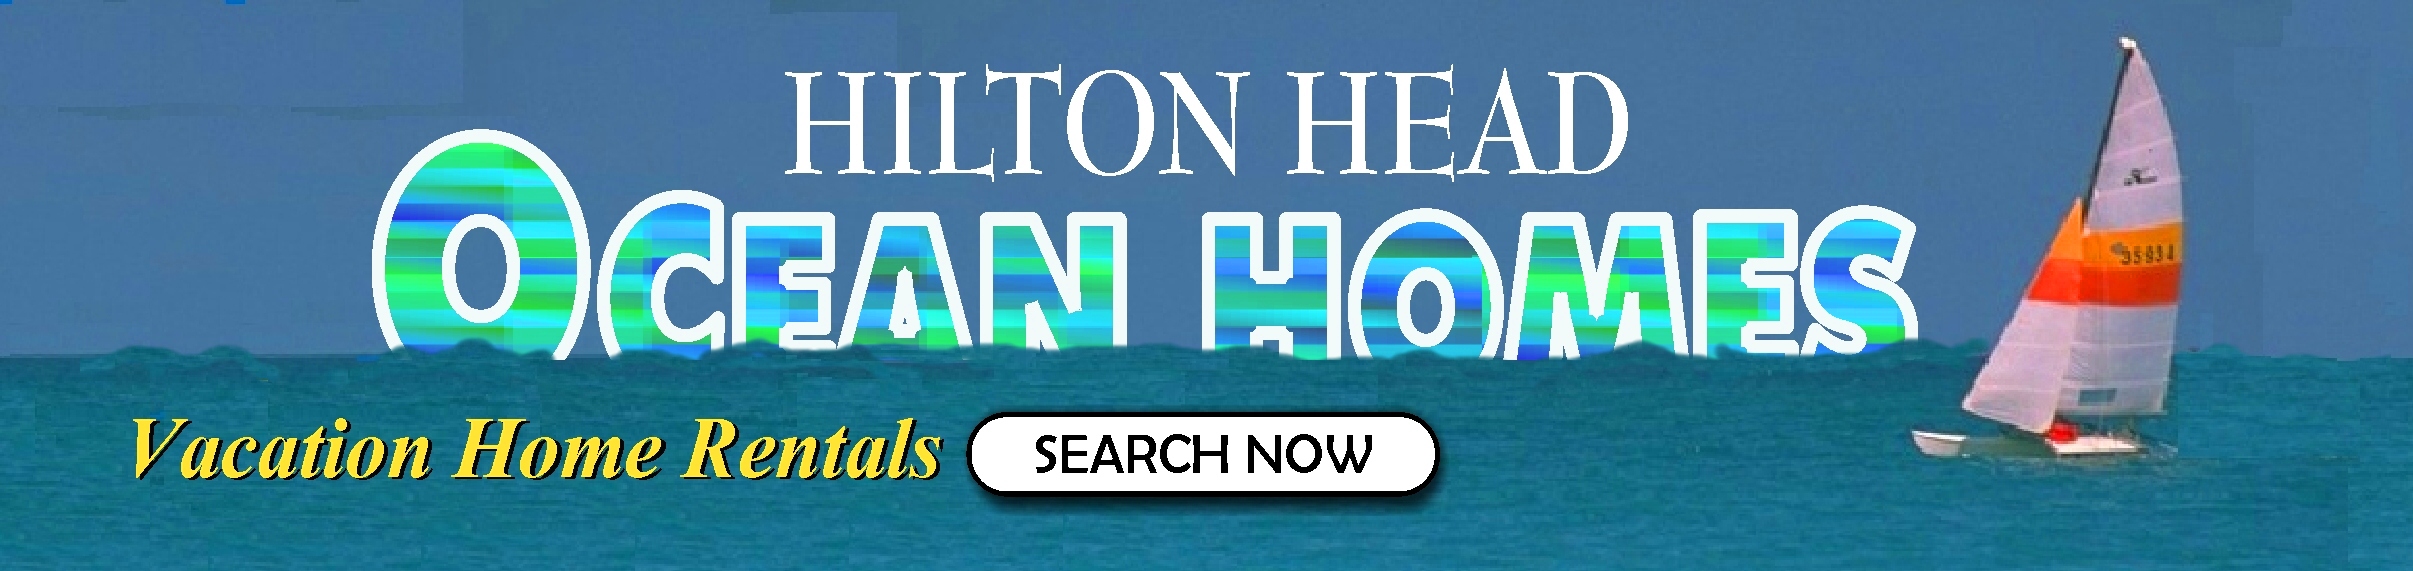 HILTON HEAD OCEAN HOMES